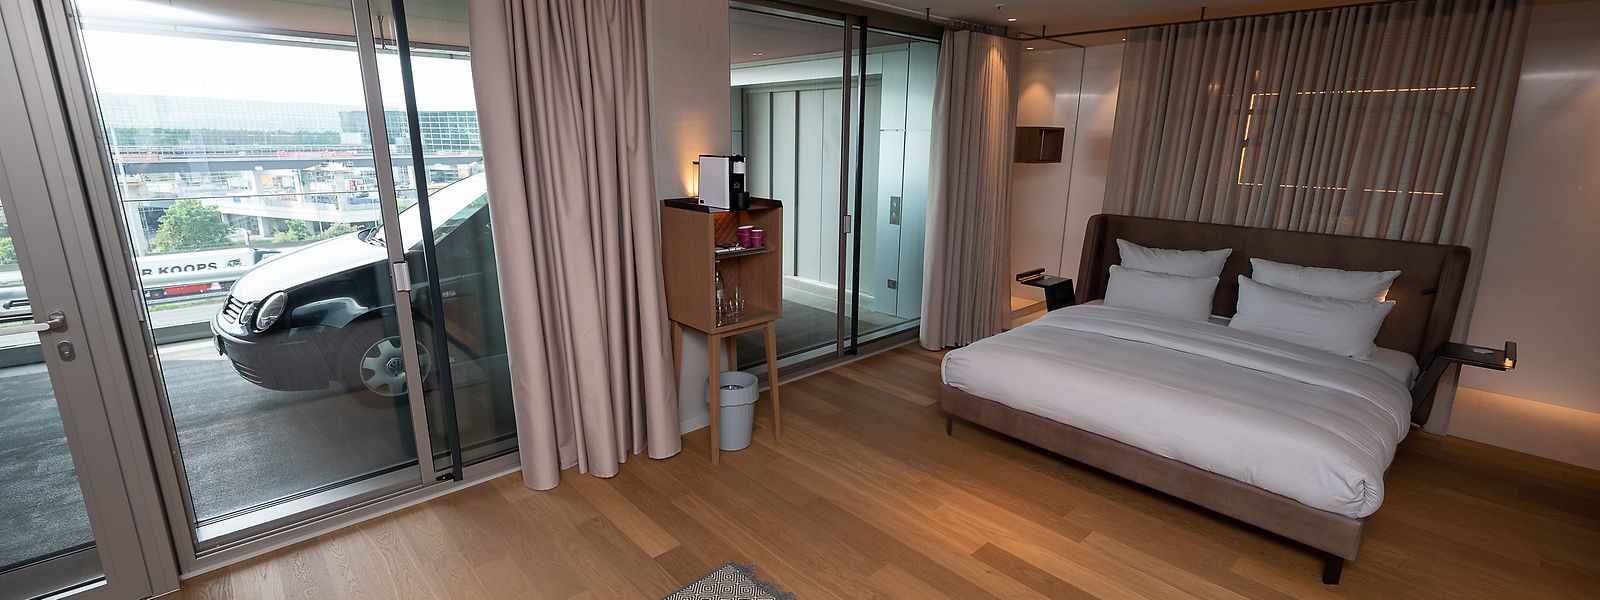 Das neues Hotel in Frankfurt hat für seine Gäste ein besonderes Angebot parat.